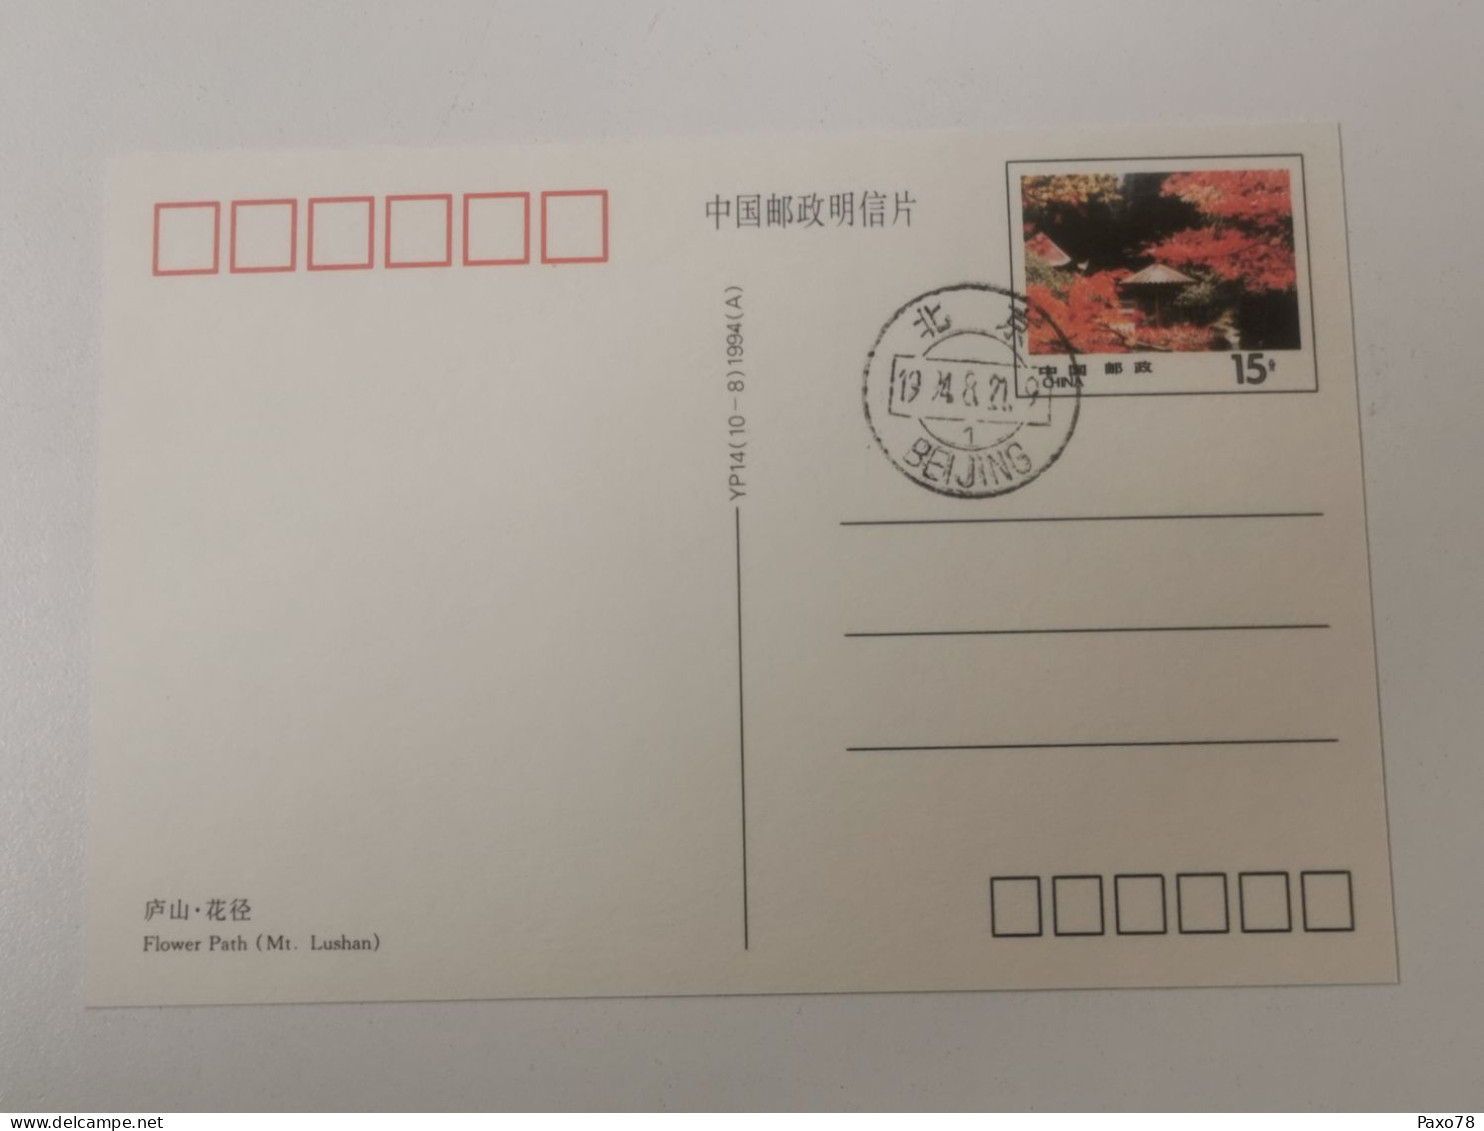 China, Stamped Postcard Beijing - Maximumkaarten